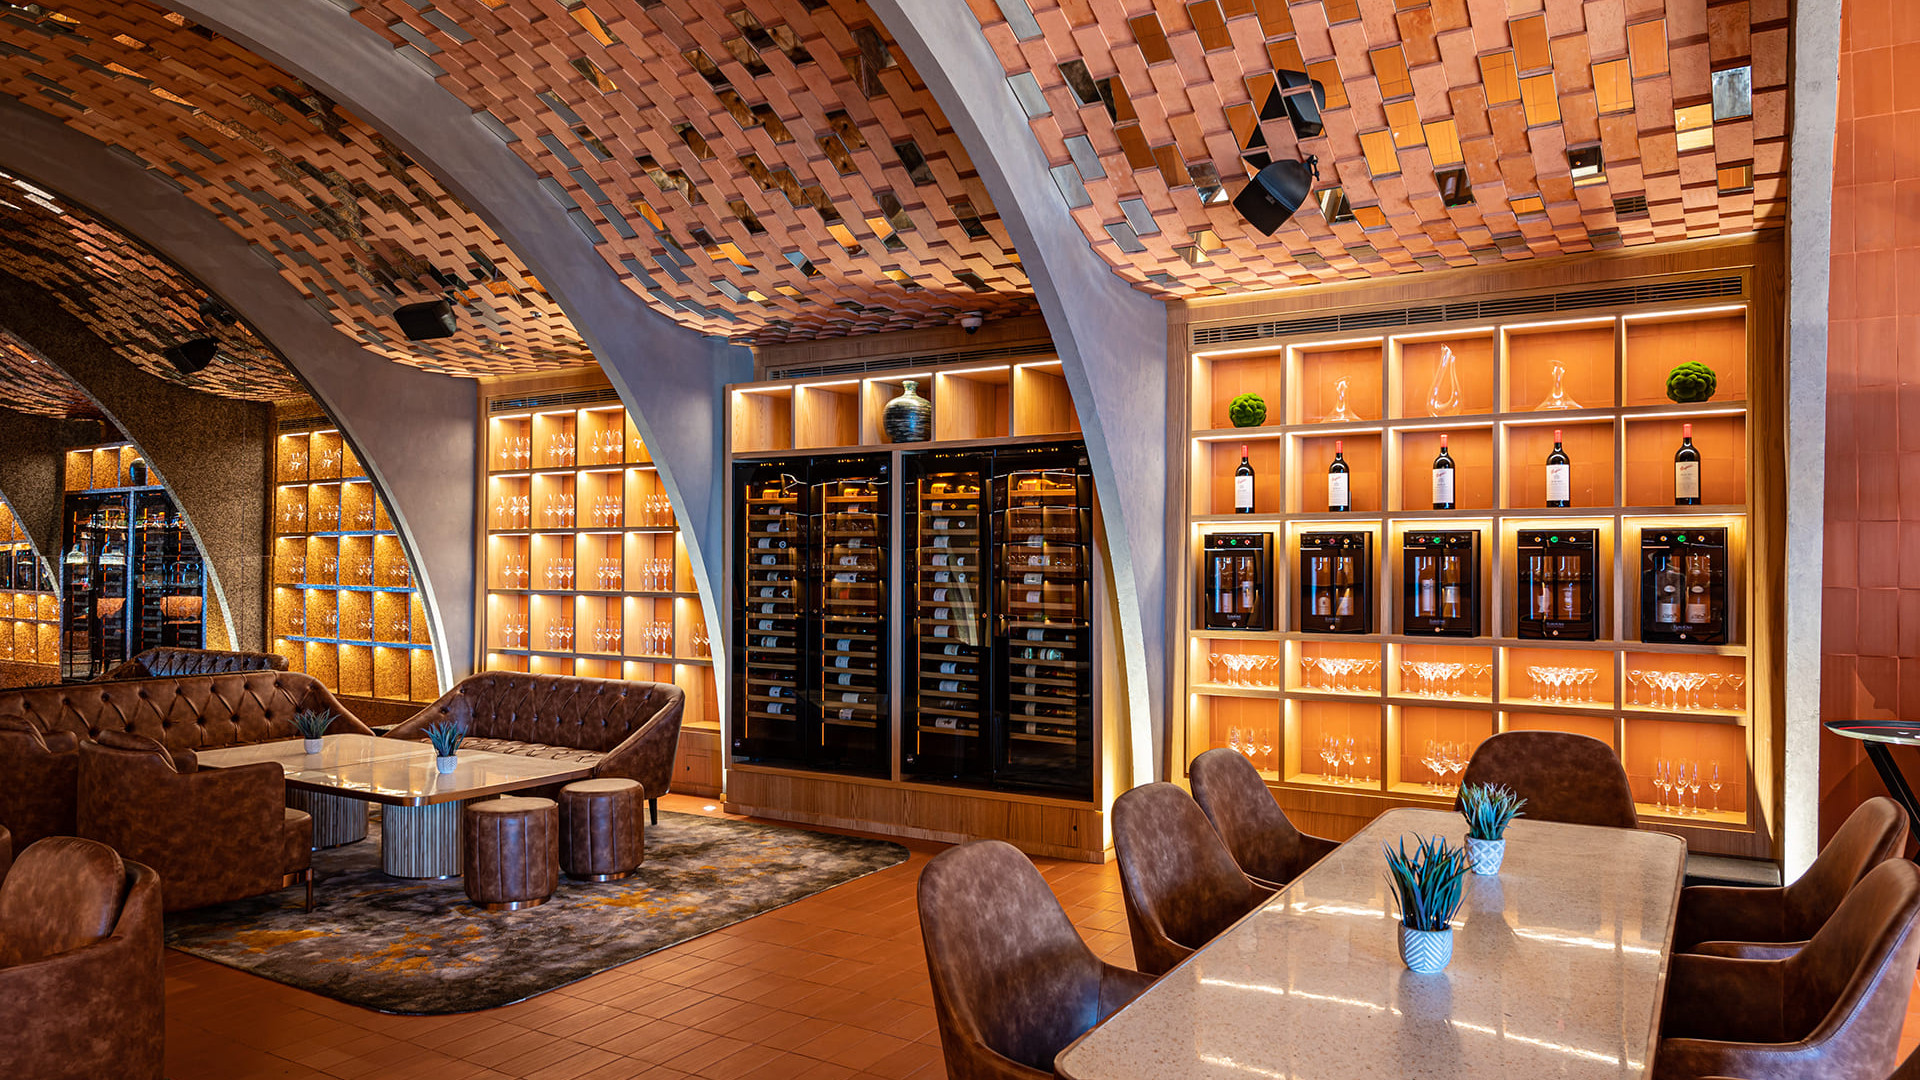 Atemberaubende Restaurant-Szenografie mit Service-Weinkhülschränke und Weinbars, integriert in maßgefertigte Möbel. Ausstellungsbar, um das Weinangebot hervorzuheben und Kundeninteresse zu wecken.